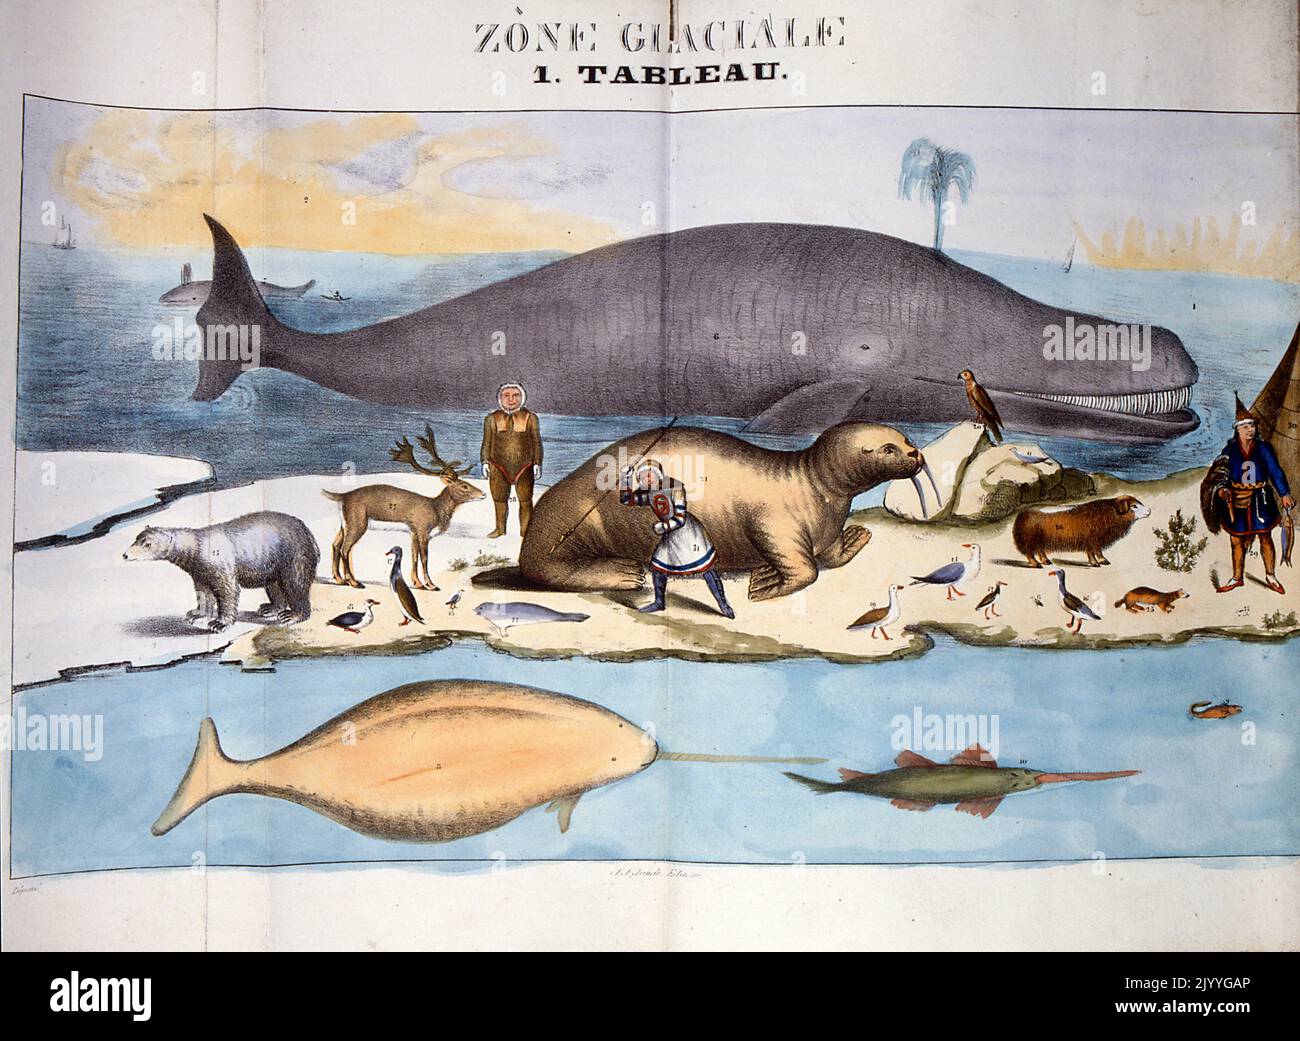 Ilustración de colores titulada 'Zona congelada' que representa animales y personas en el Ártico. Foto de stock